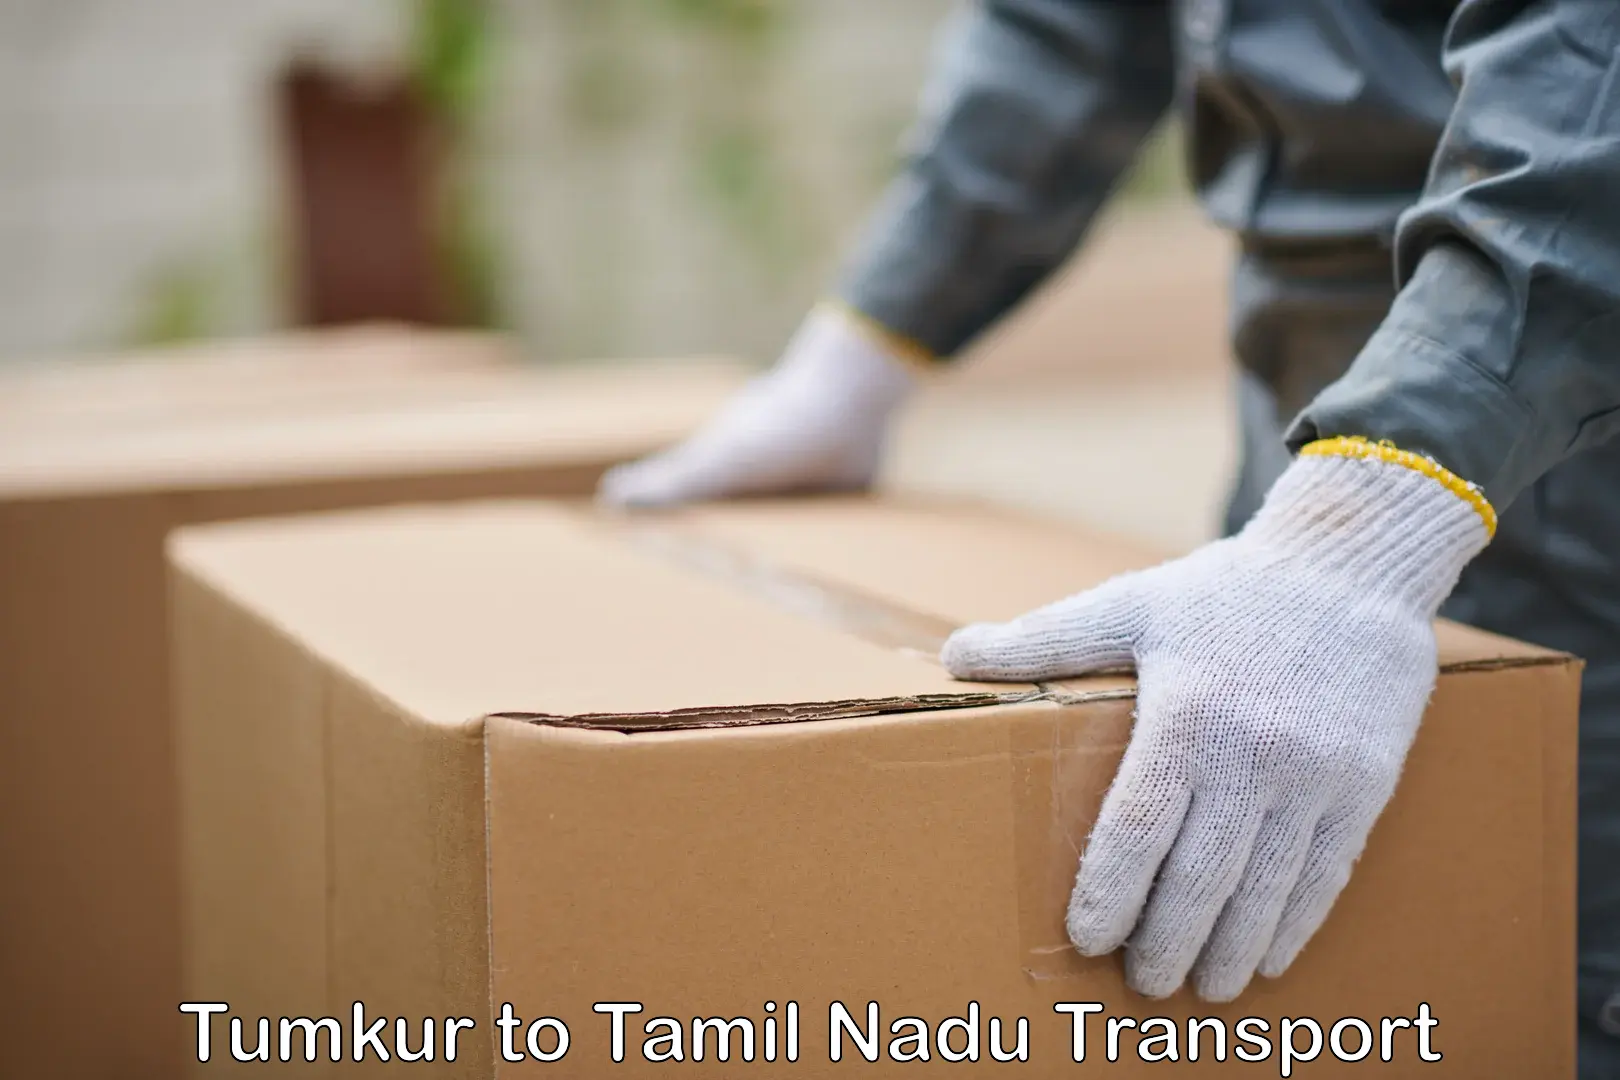 Shipping services Tumkur to Gudiyattam